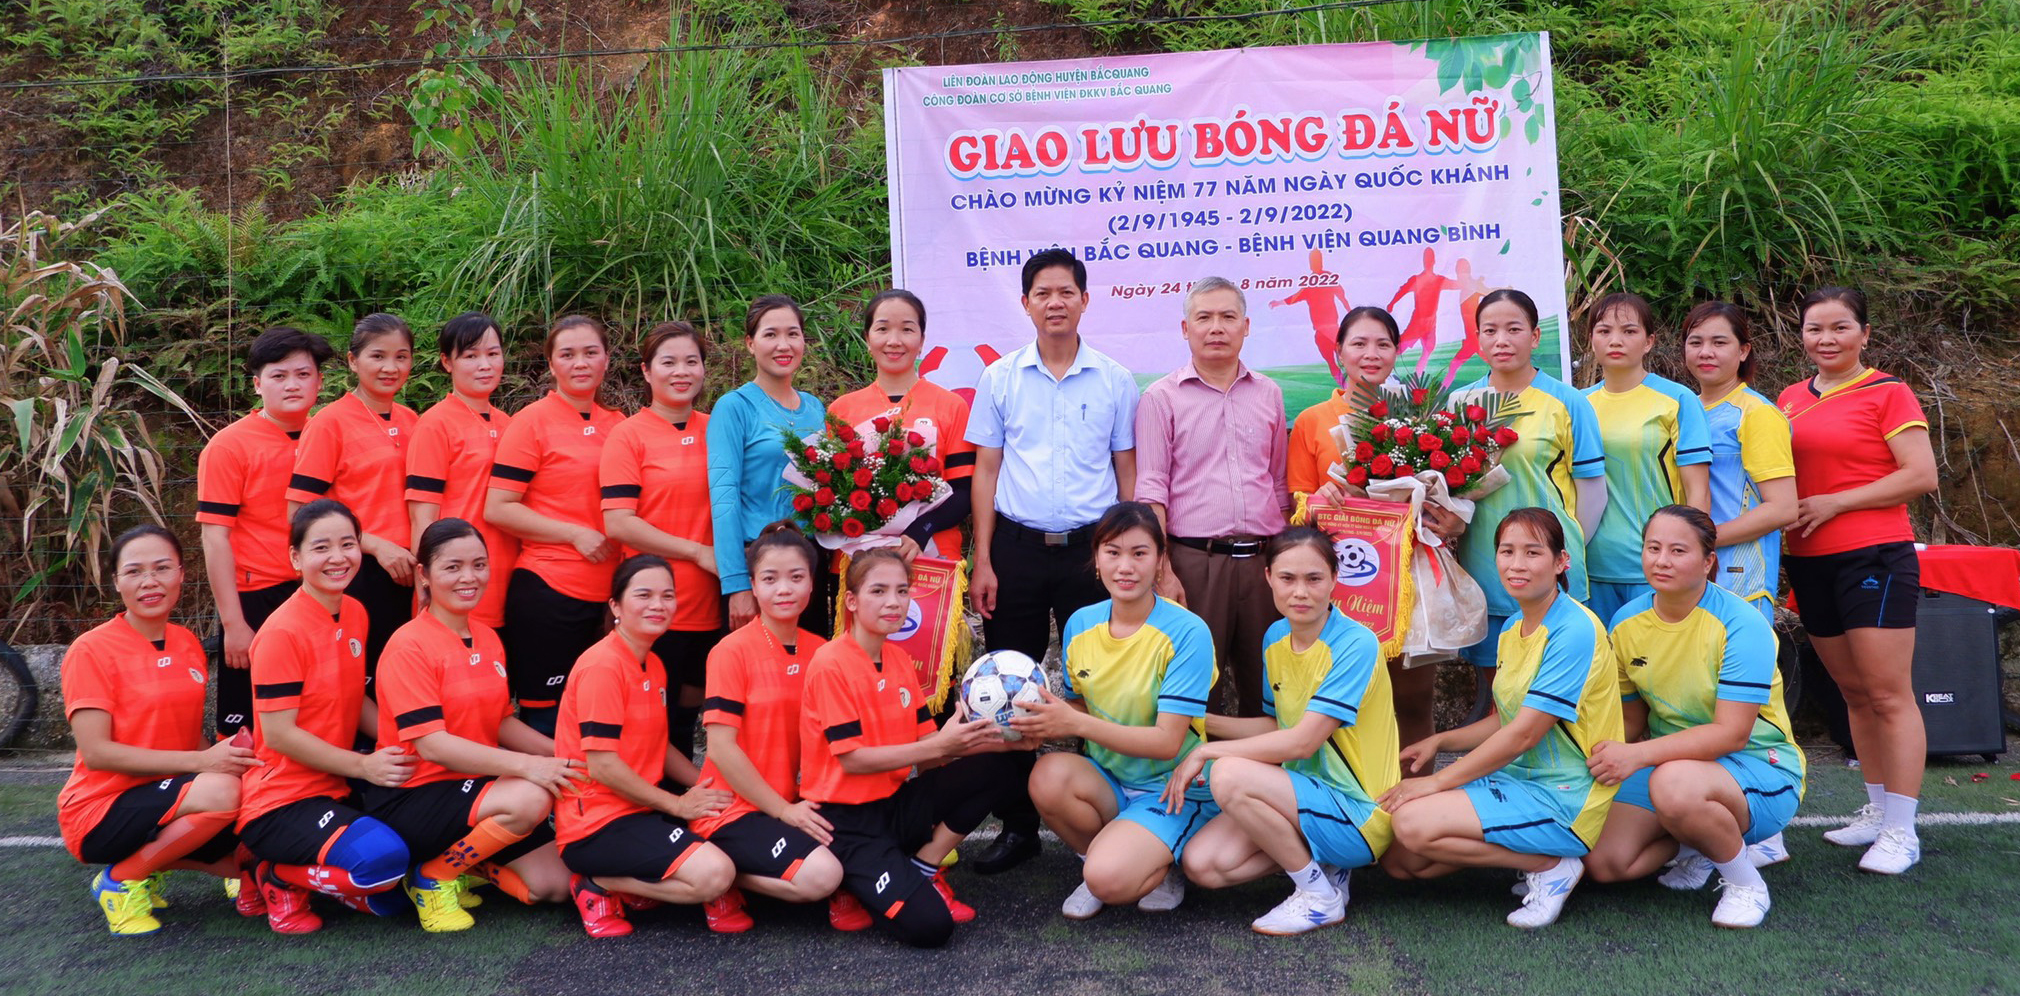 Bác sĩ Phạm Mạnh Công, Giám đốc Bệnh viện ĐKKV Bắc Quang tặng hoa và cờ lưu niệm cho các đội bóng đá nữ